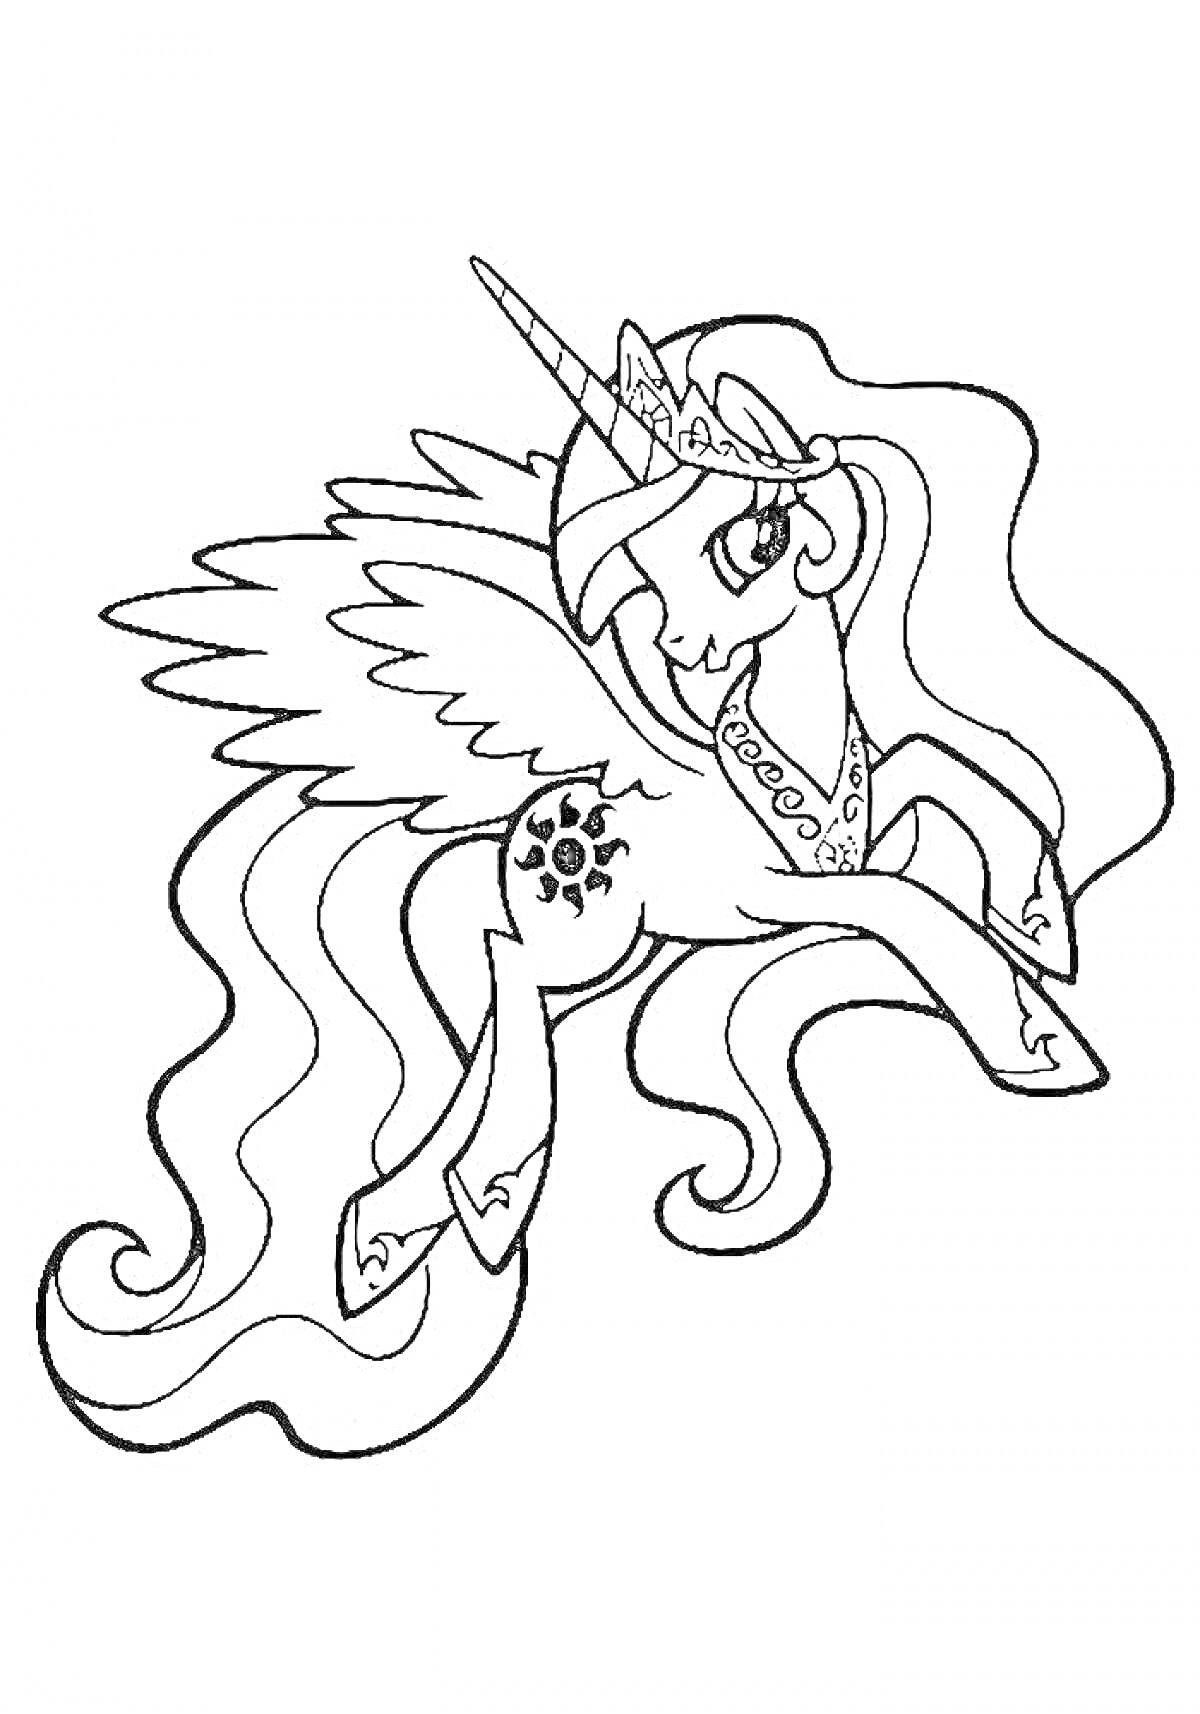 Принцесса Селестия с длинными развевающимися волосами, короной, рогом, крыльями и солнцем на бедре